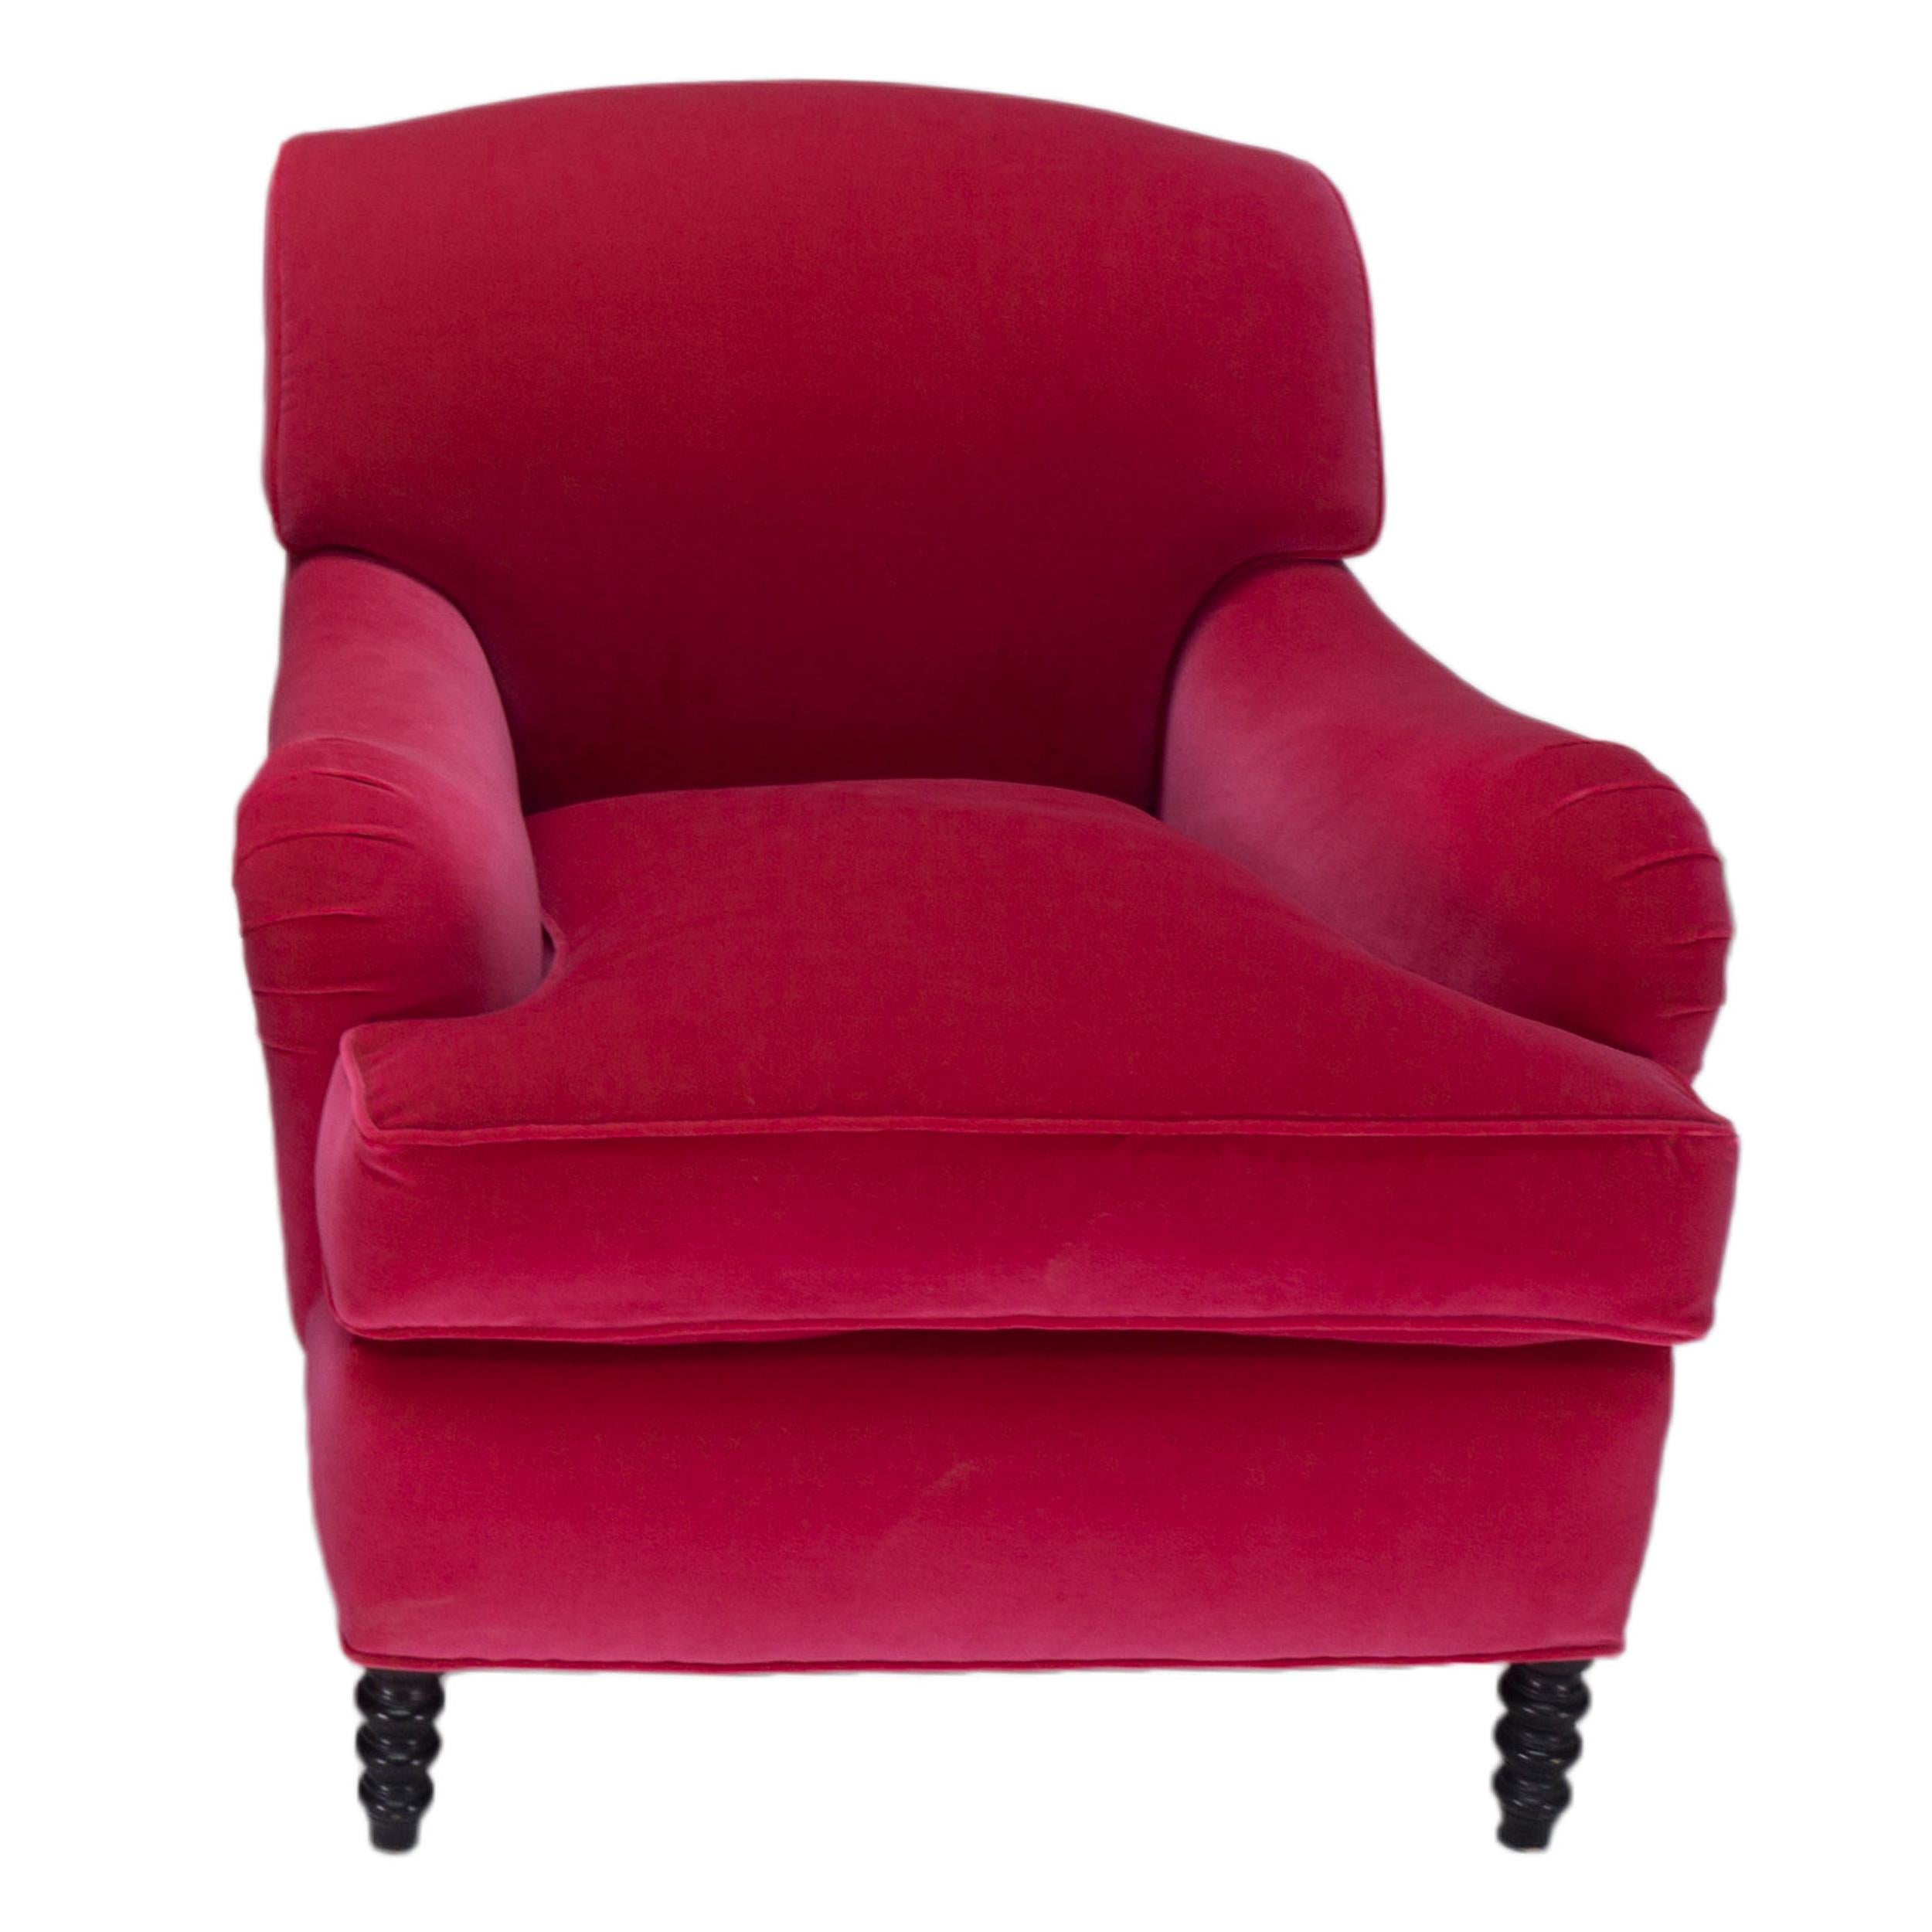 Zeitgenössische Variante des englischen Rollarm-Stuhls mit fester Rückenlehne und lockerem Sitzkissen. Der Stuhl verfügt außerdem über gedrechselte Spulenbeine an der Vorderseite und eine tiefe Sitzfläche. Abgebildet in 100% Baumwolle, dicker Flor,